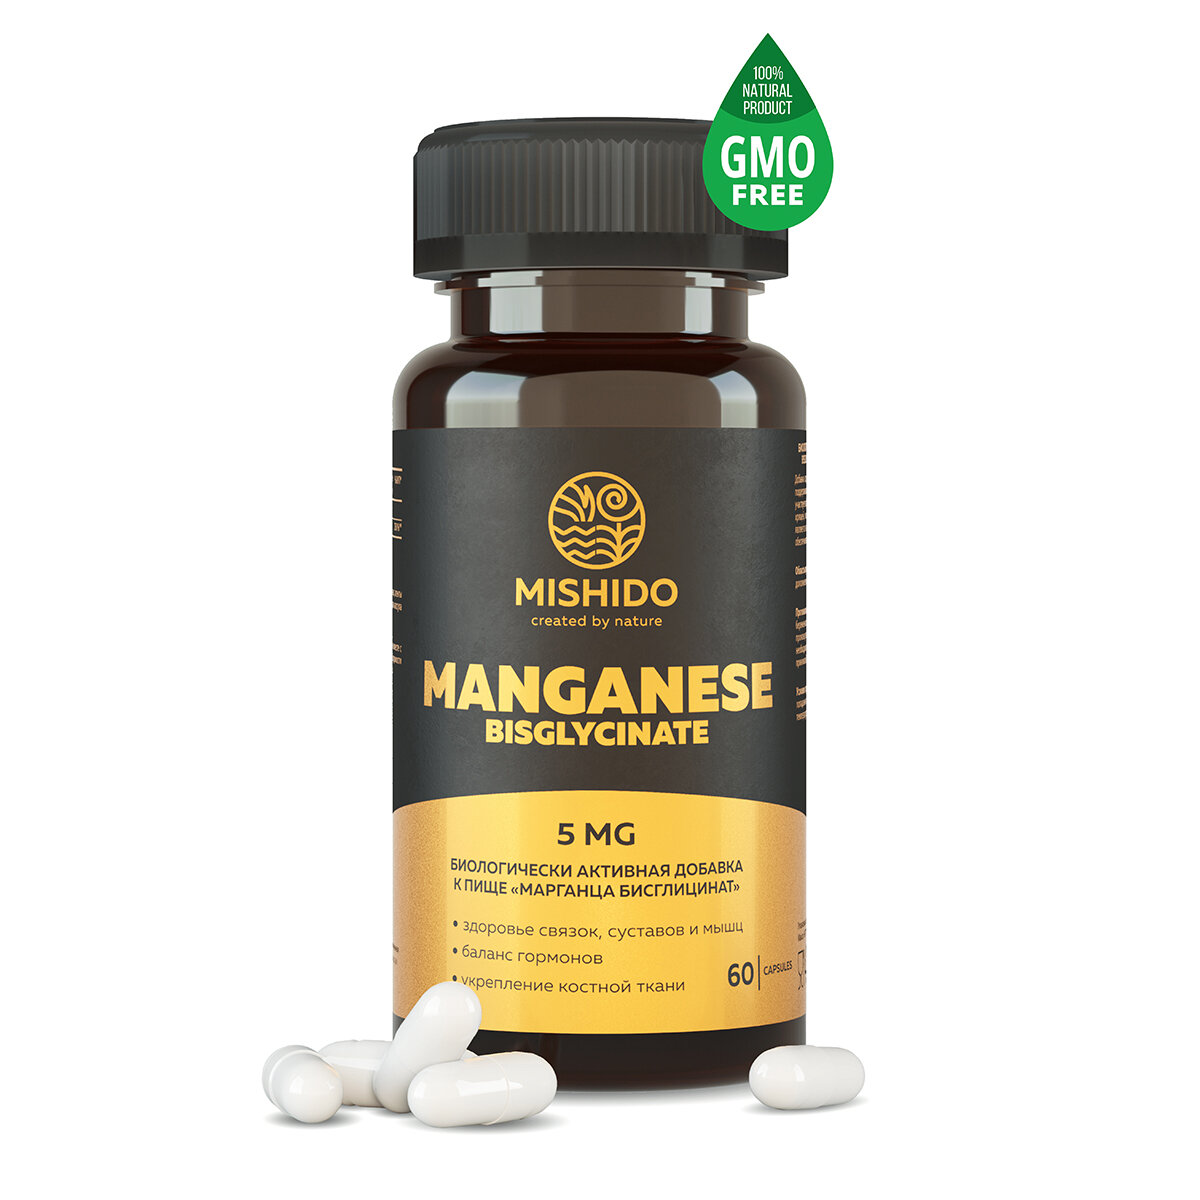 Марганец Бисглицинат марганца хелат 60 капсул Manganese Bisglycinate Biocaps MISHIDO спортивные витамины для костей сердца сосудов нервной системы